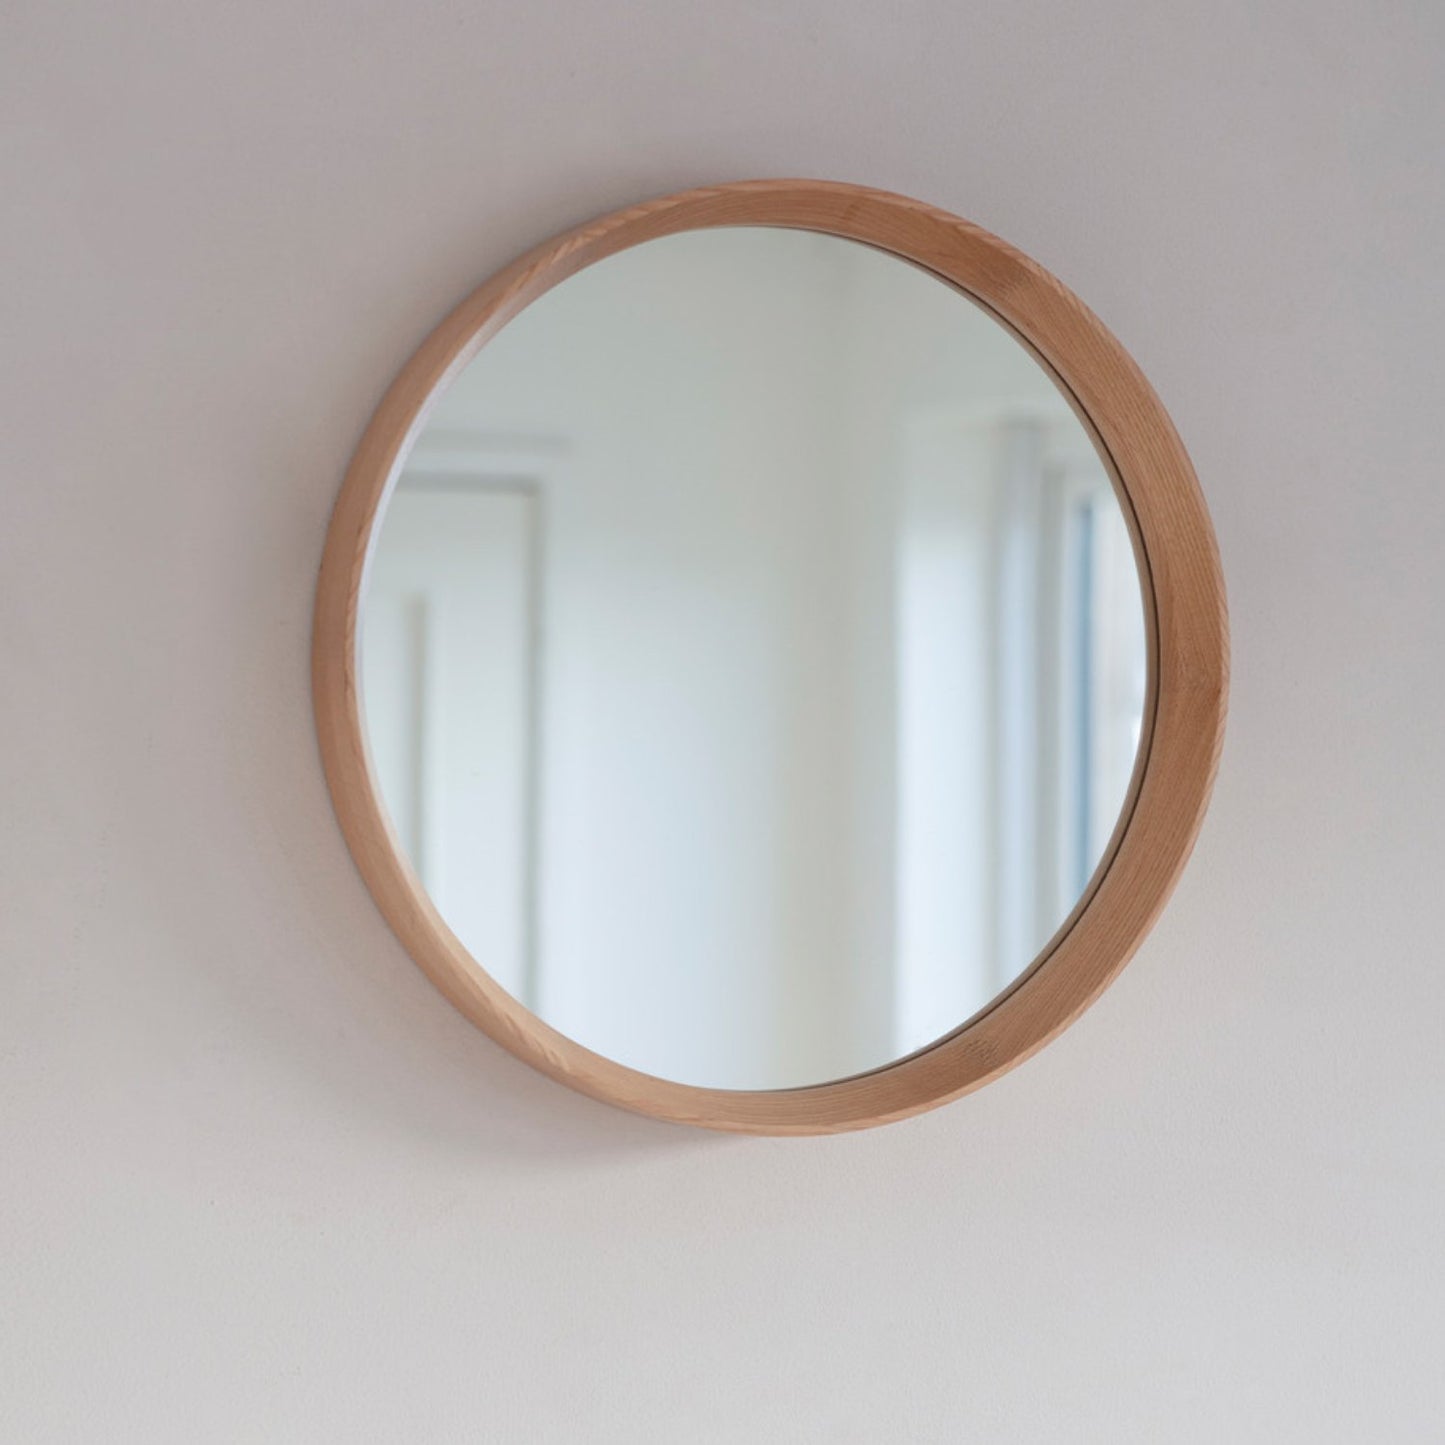 Hambledon Round Mirror in 53cm by Garden Trading - Oak